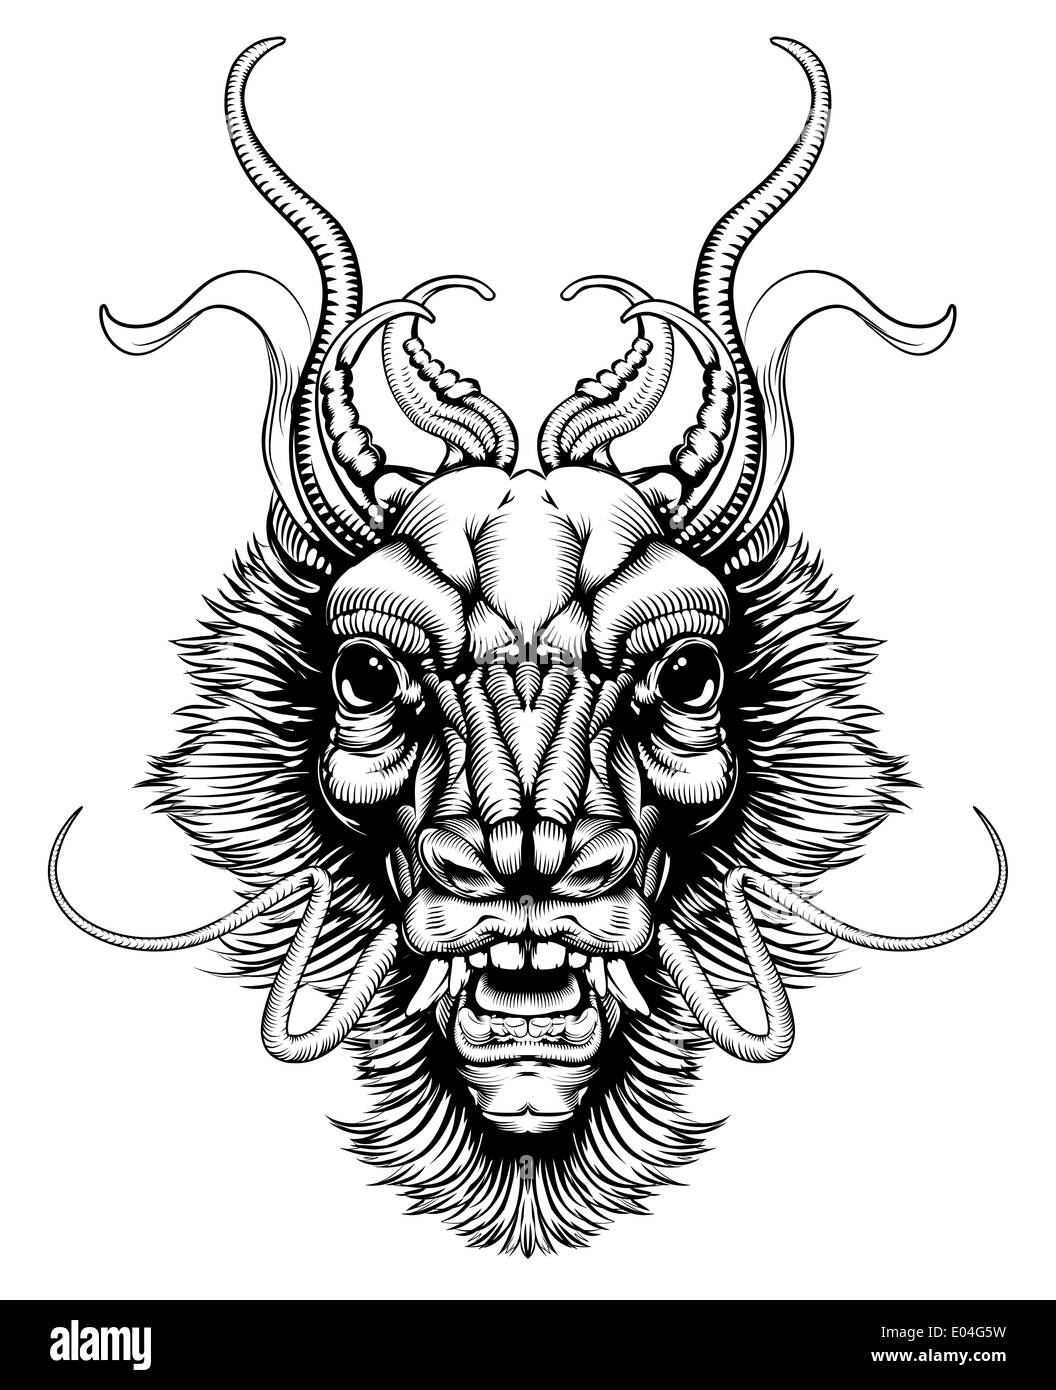 Une illustration originale d'un dragon ou monstre tête dans un style dynamique sur bois Banque D'Images